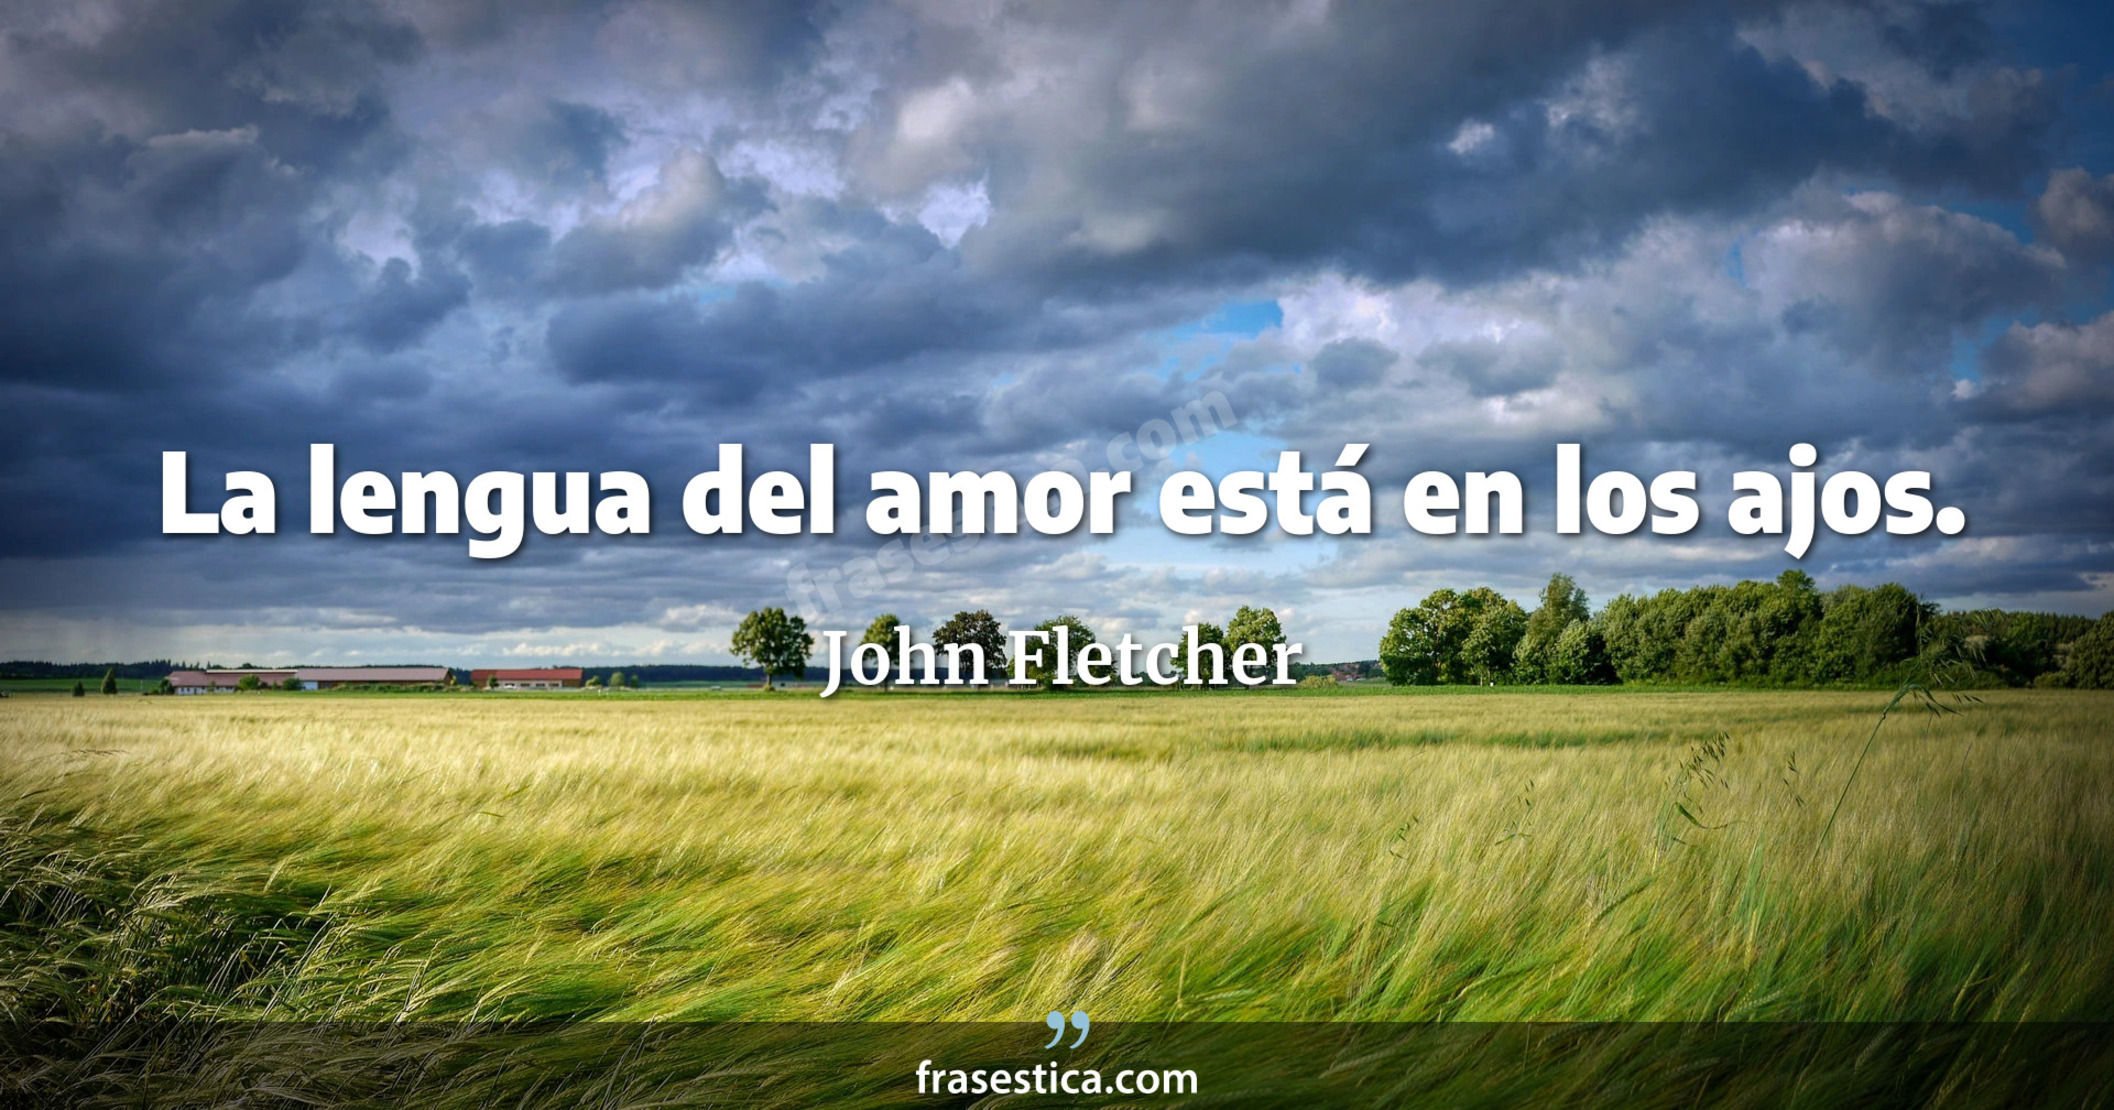 La lengua del amor está en los ajos. - John Fletcher